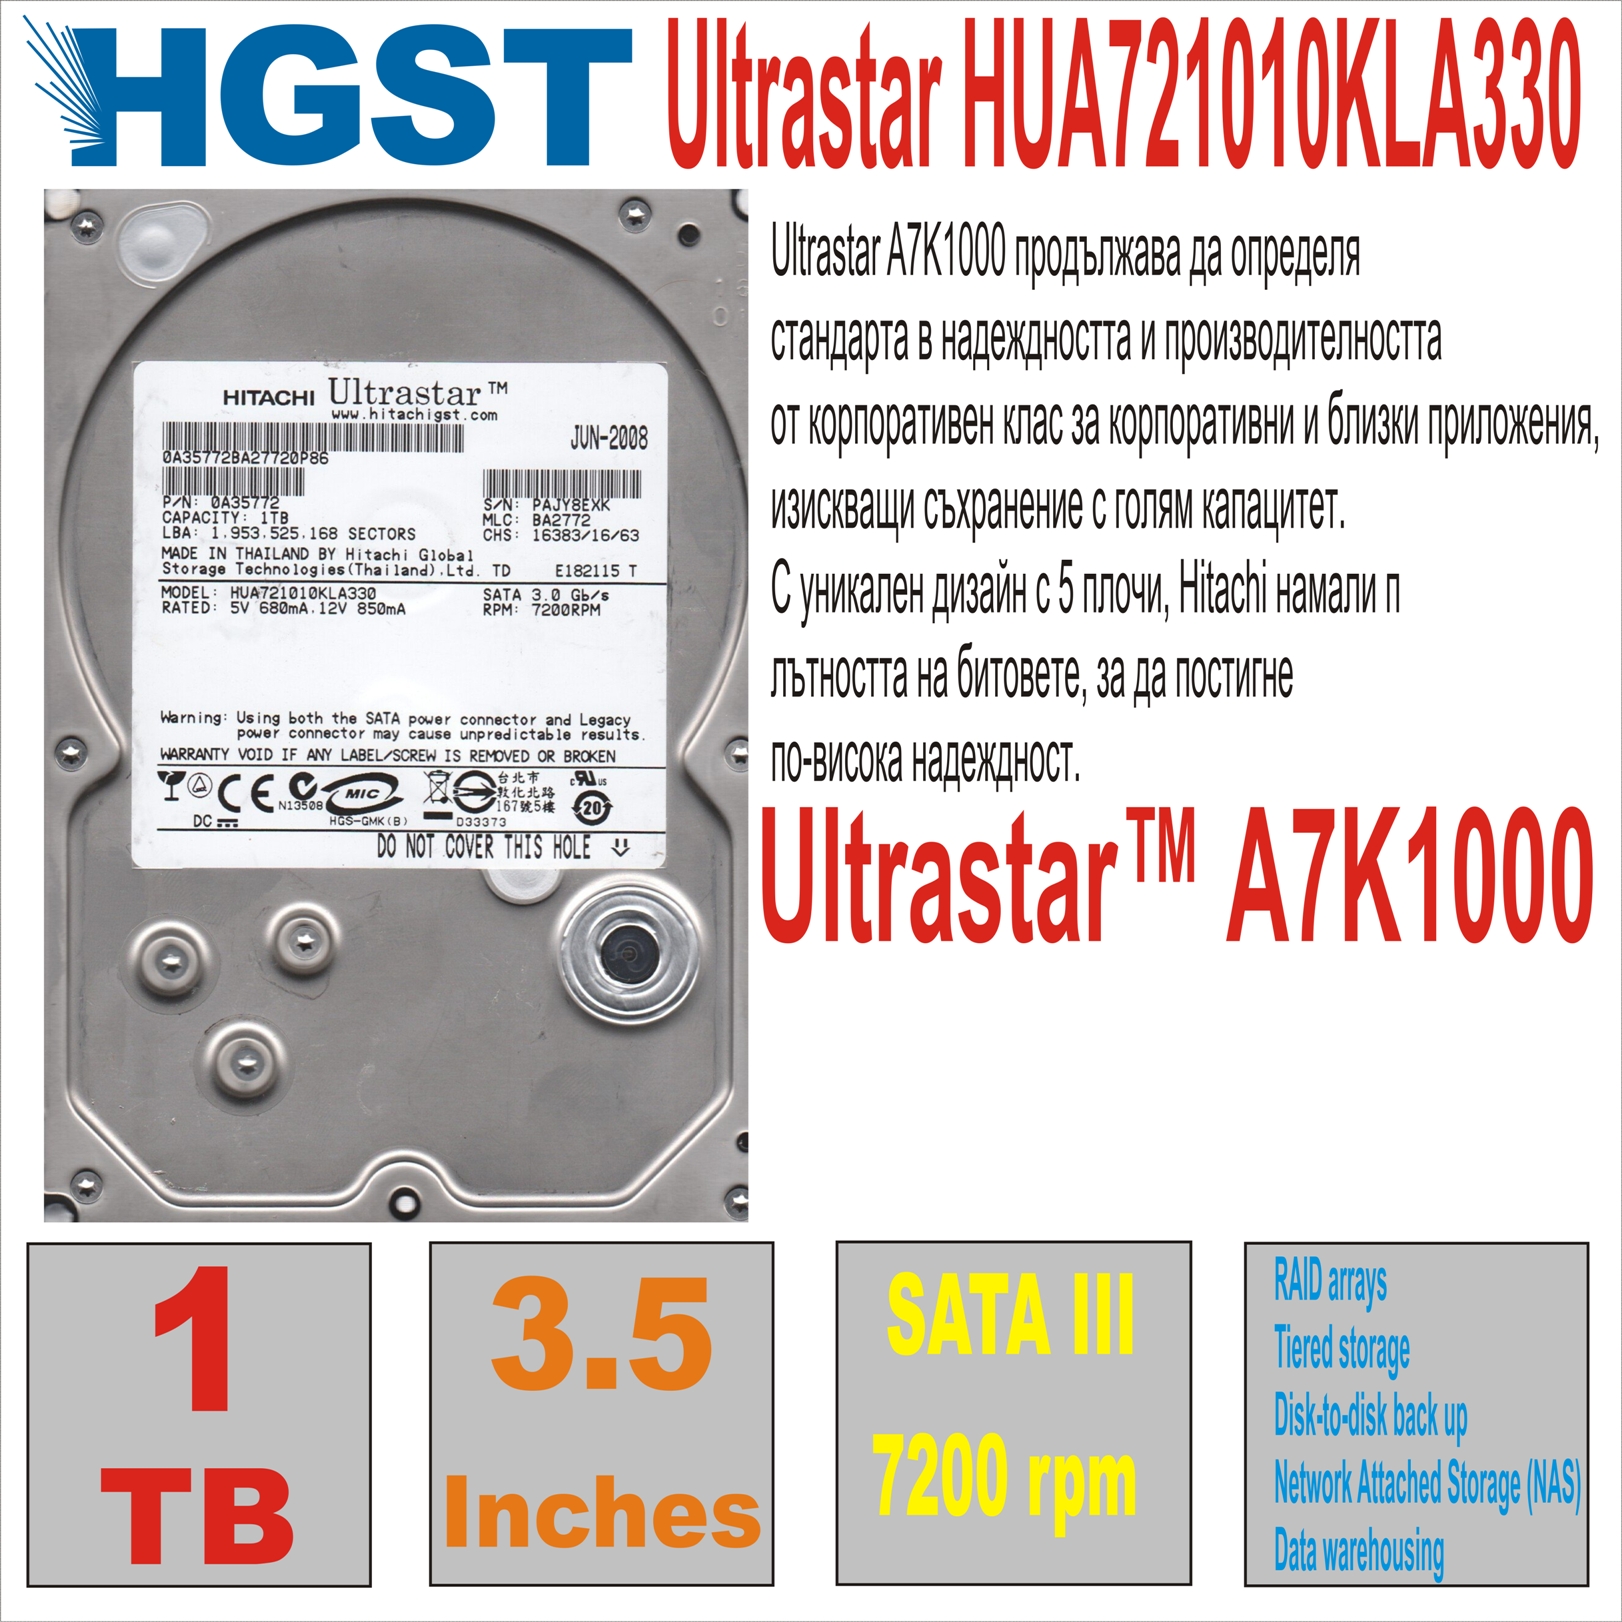 HDD 3.5` 1 TB HITACHI Ultrastar HUA721010KLA330